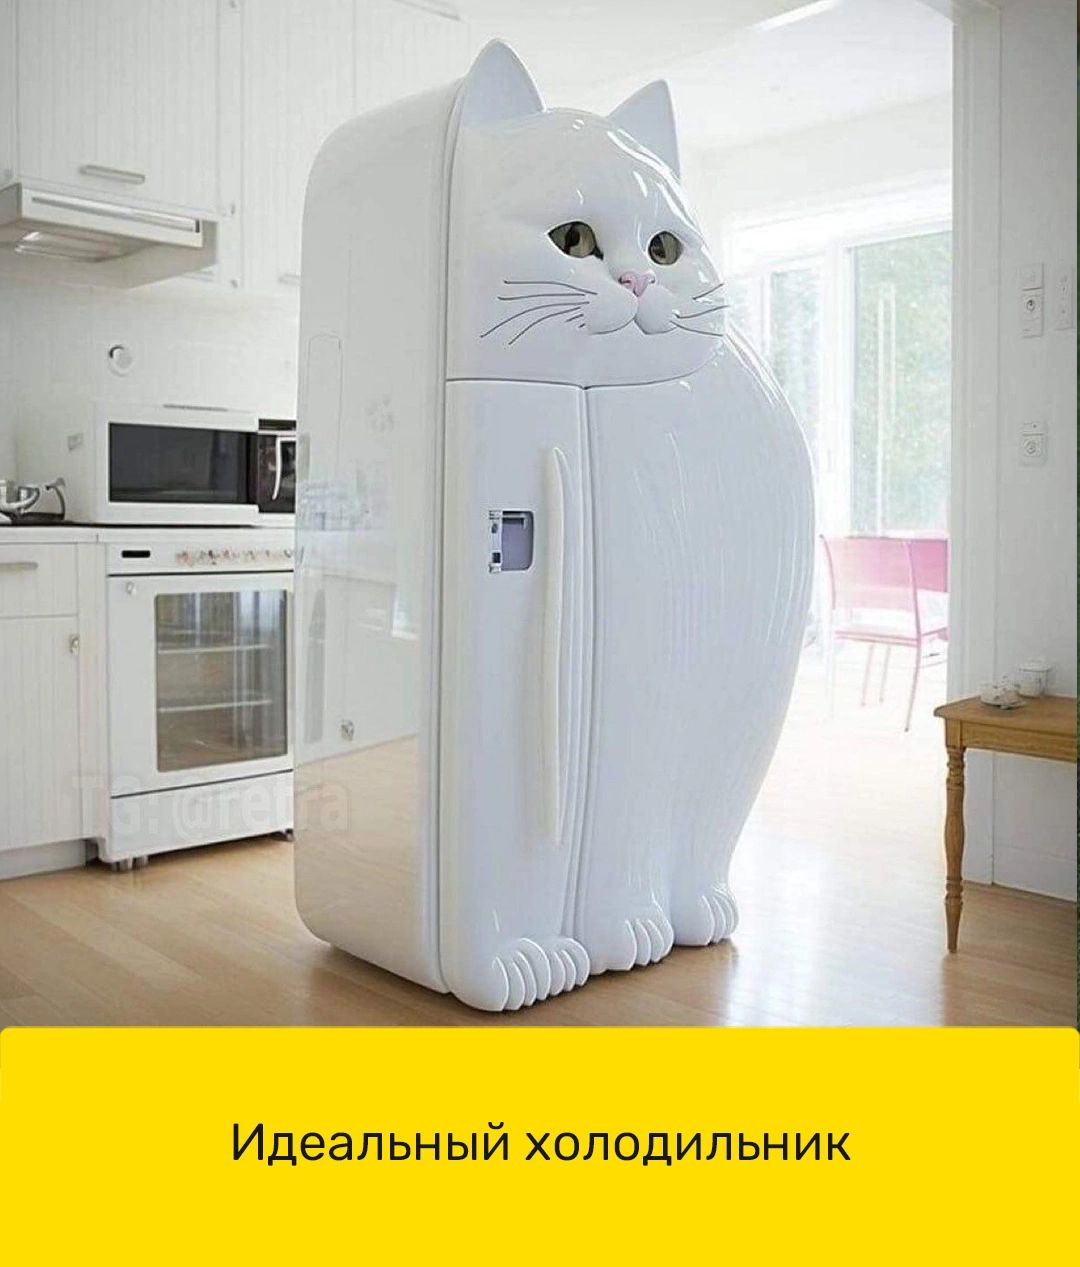 Идеальный холодильник